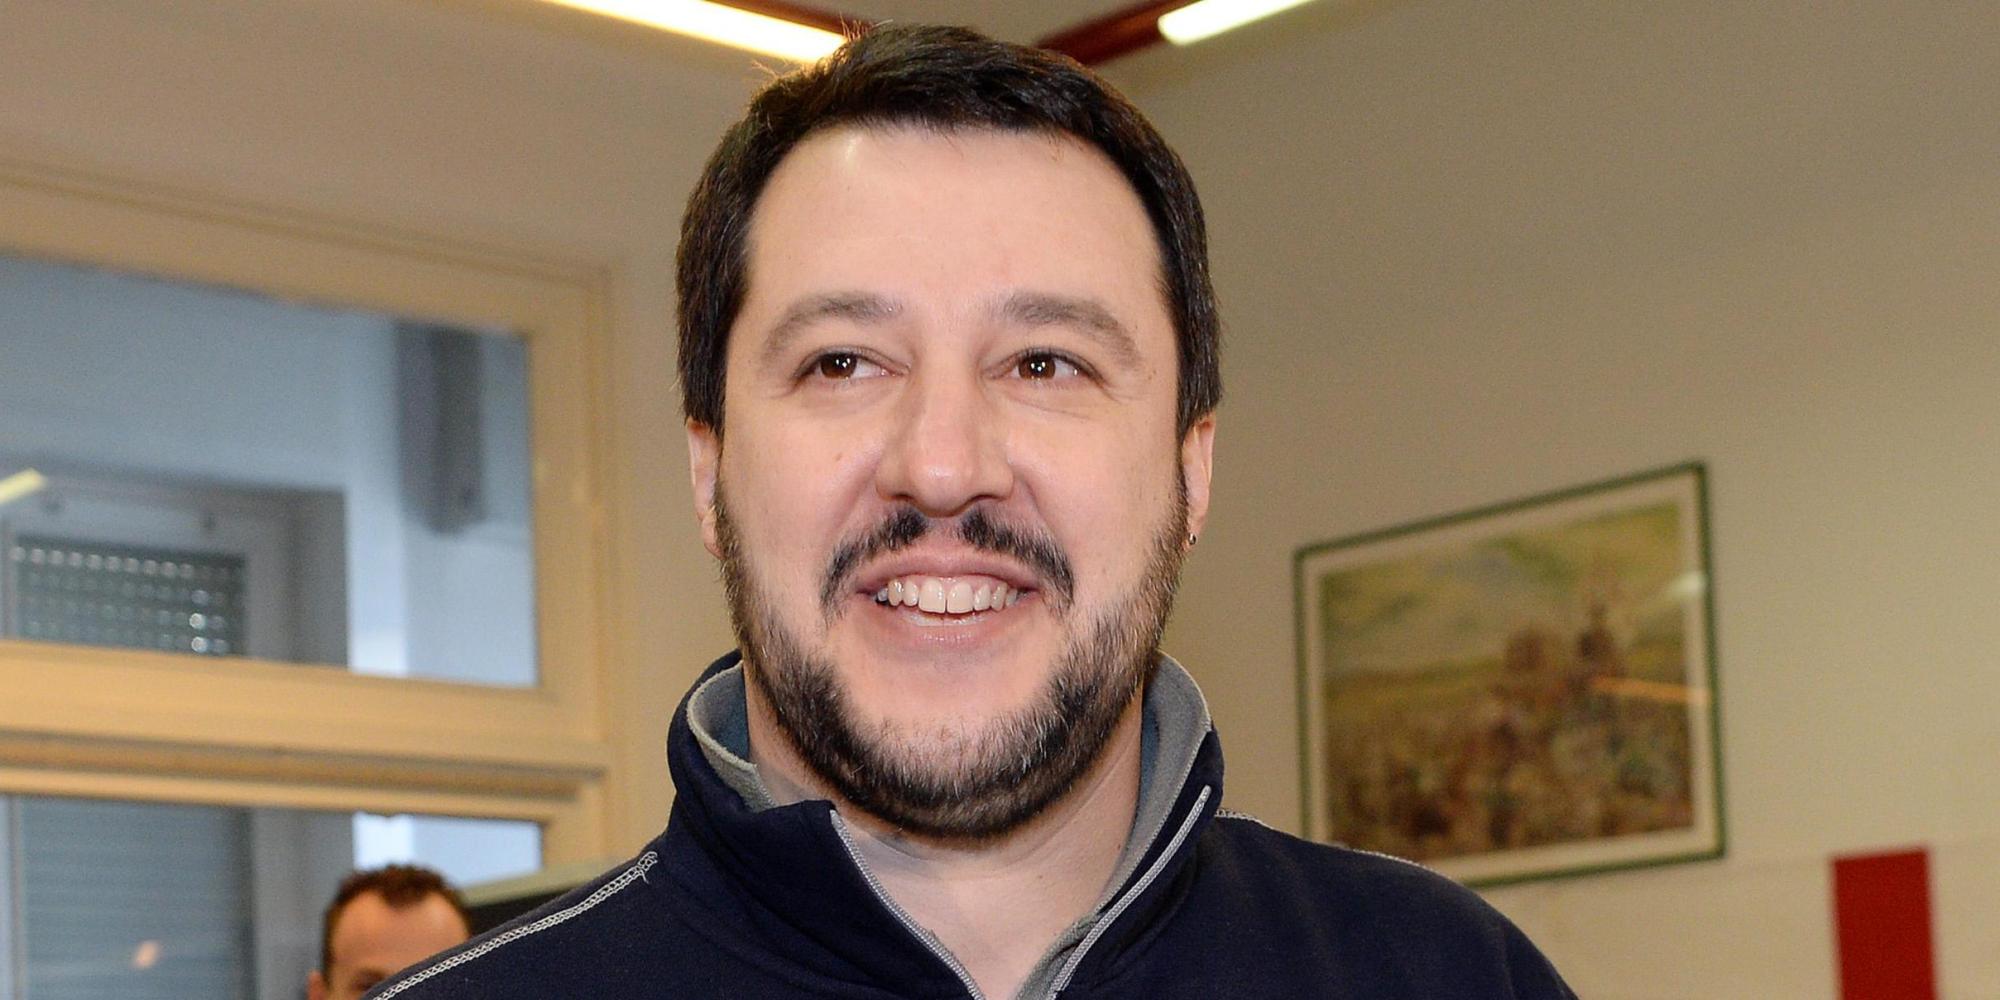 Matteo Salvini dopo il tradimento di Elisa Isoardi: "Non me la sento di dire cosa provo"